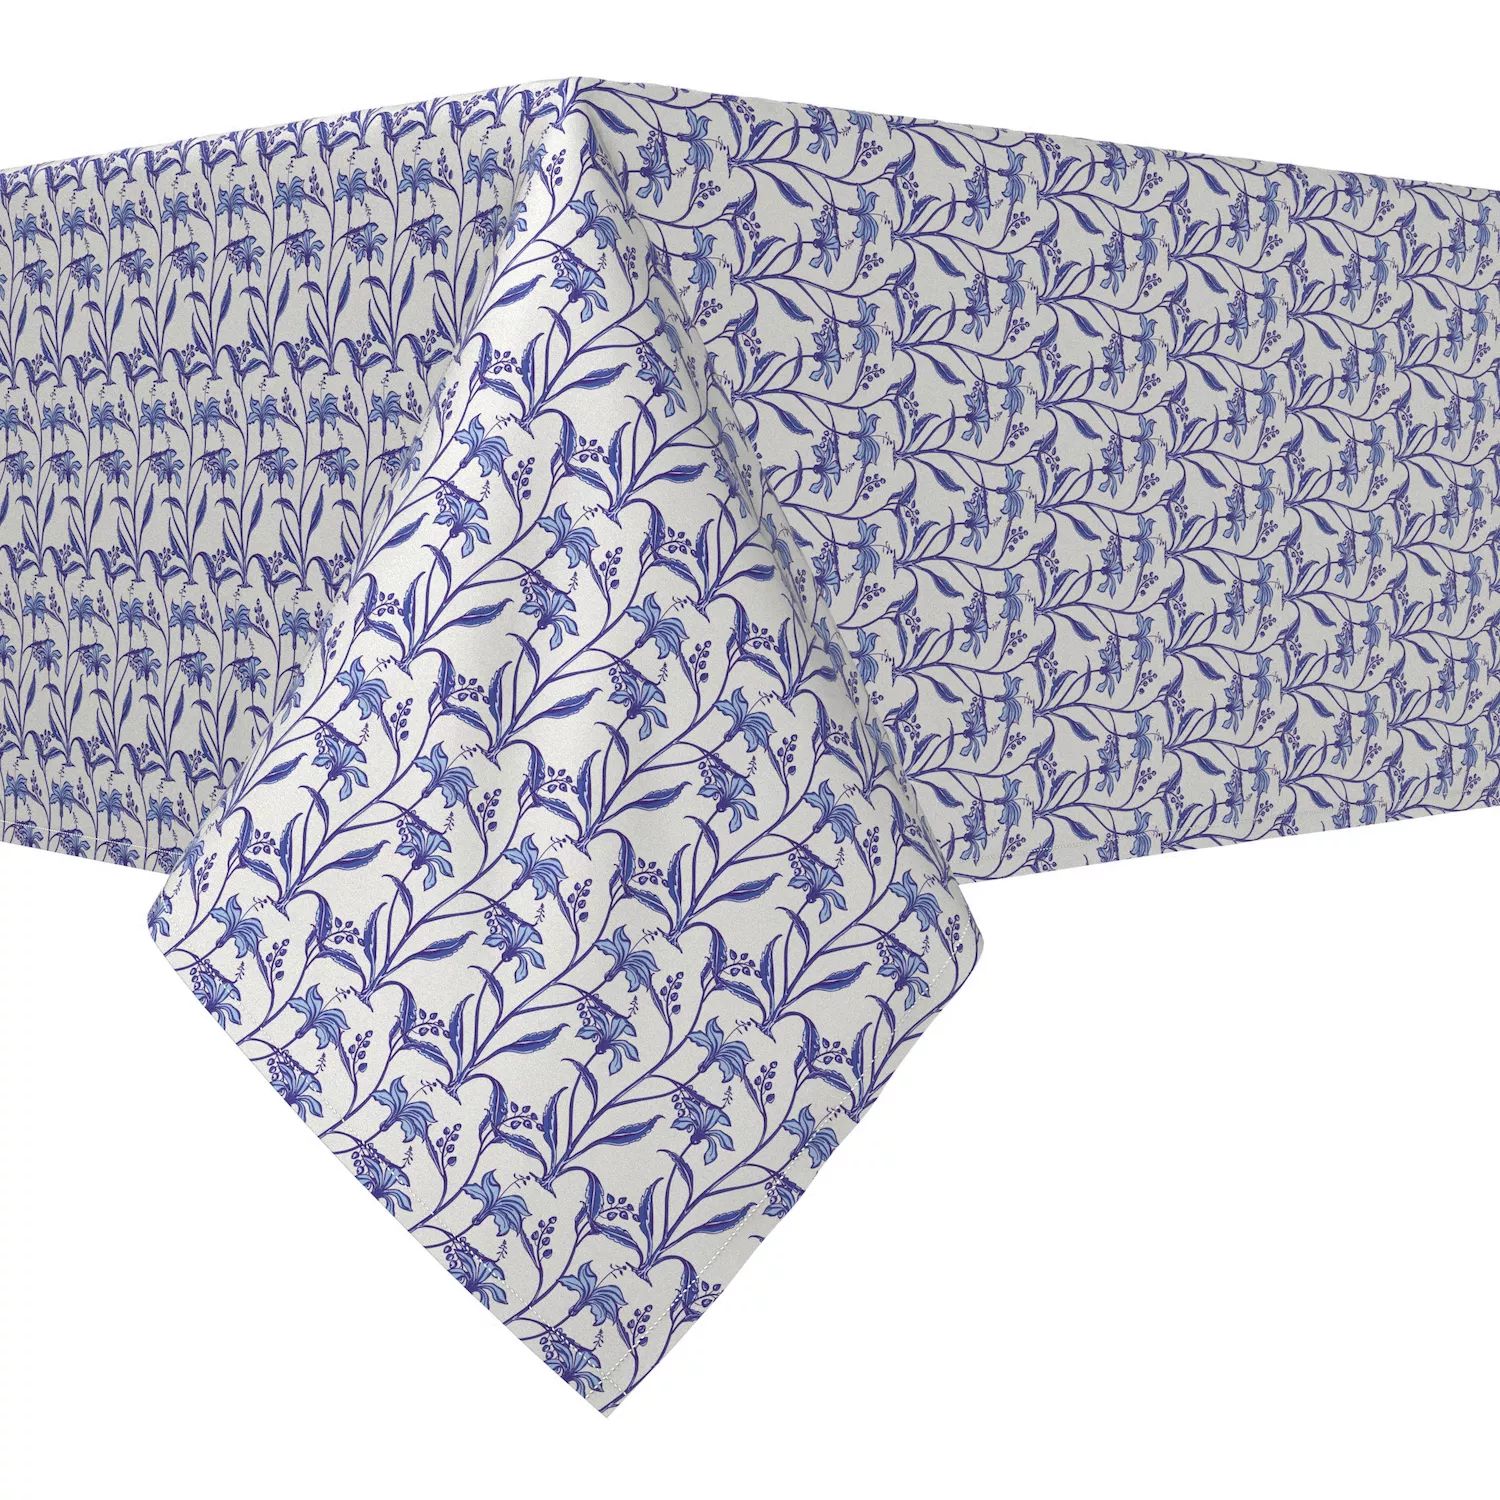 Прямоугольная скатерть, 100% полиэстер, 60x104 дюйма, лилии синих оттенков.